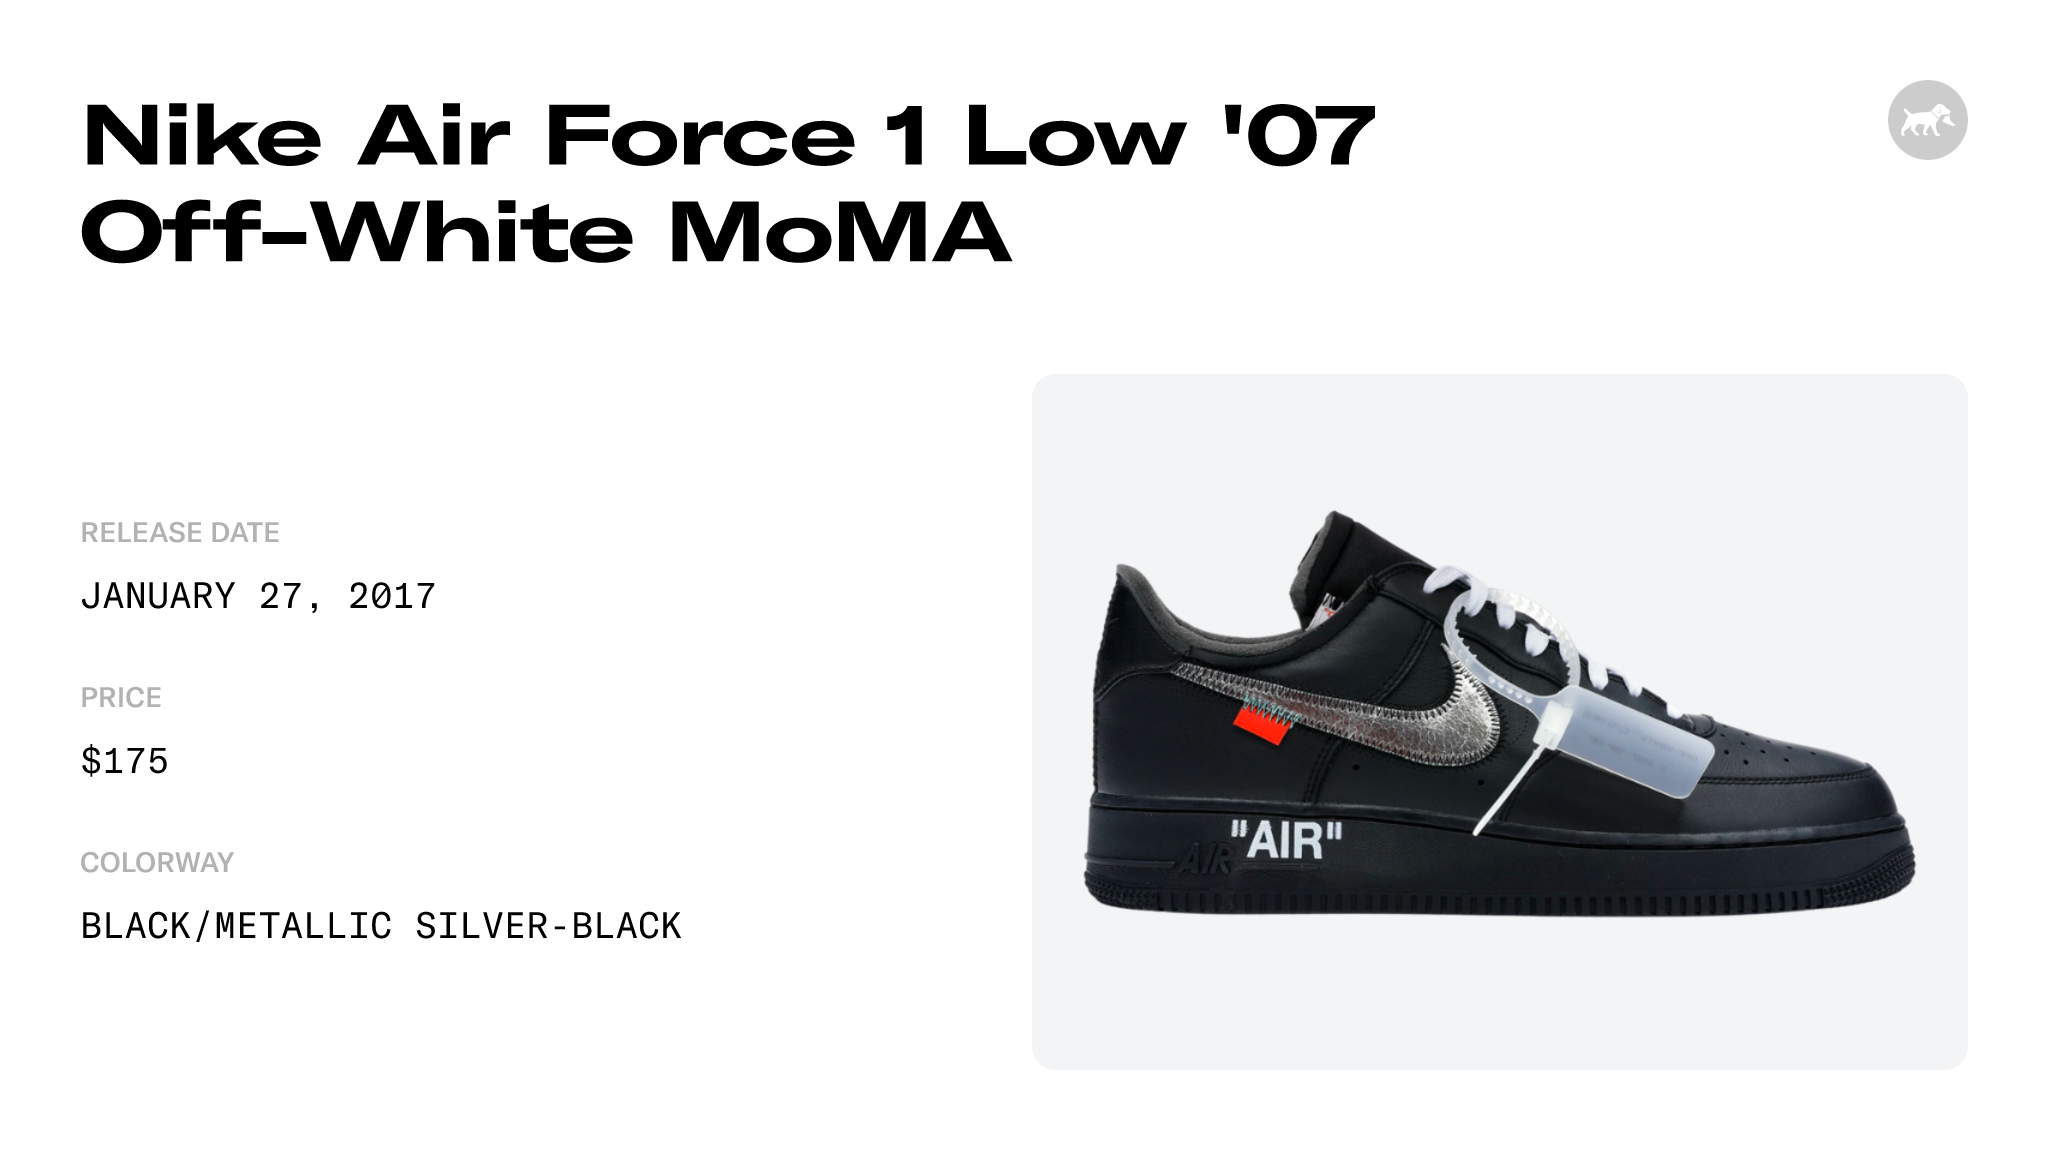 Buy Off-White x Air Force 1 Low '07 'MoMA' - AV5210 001 - Black